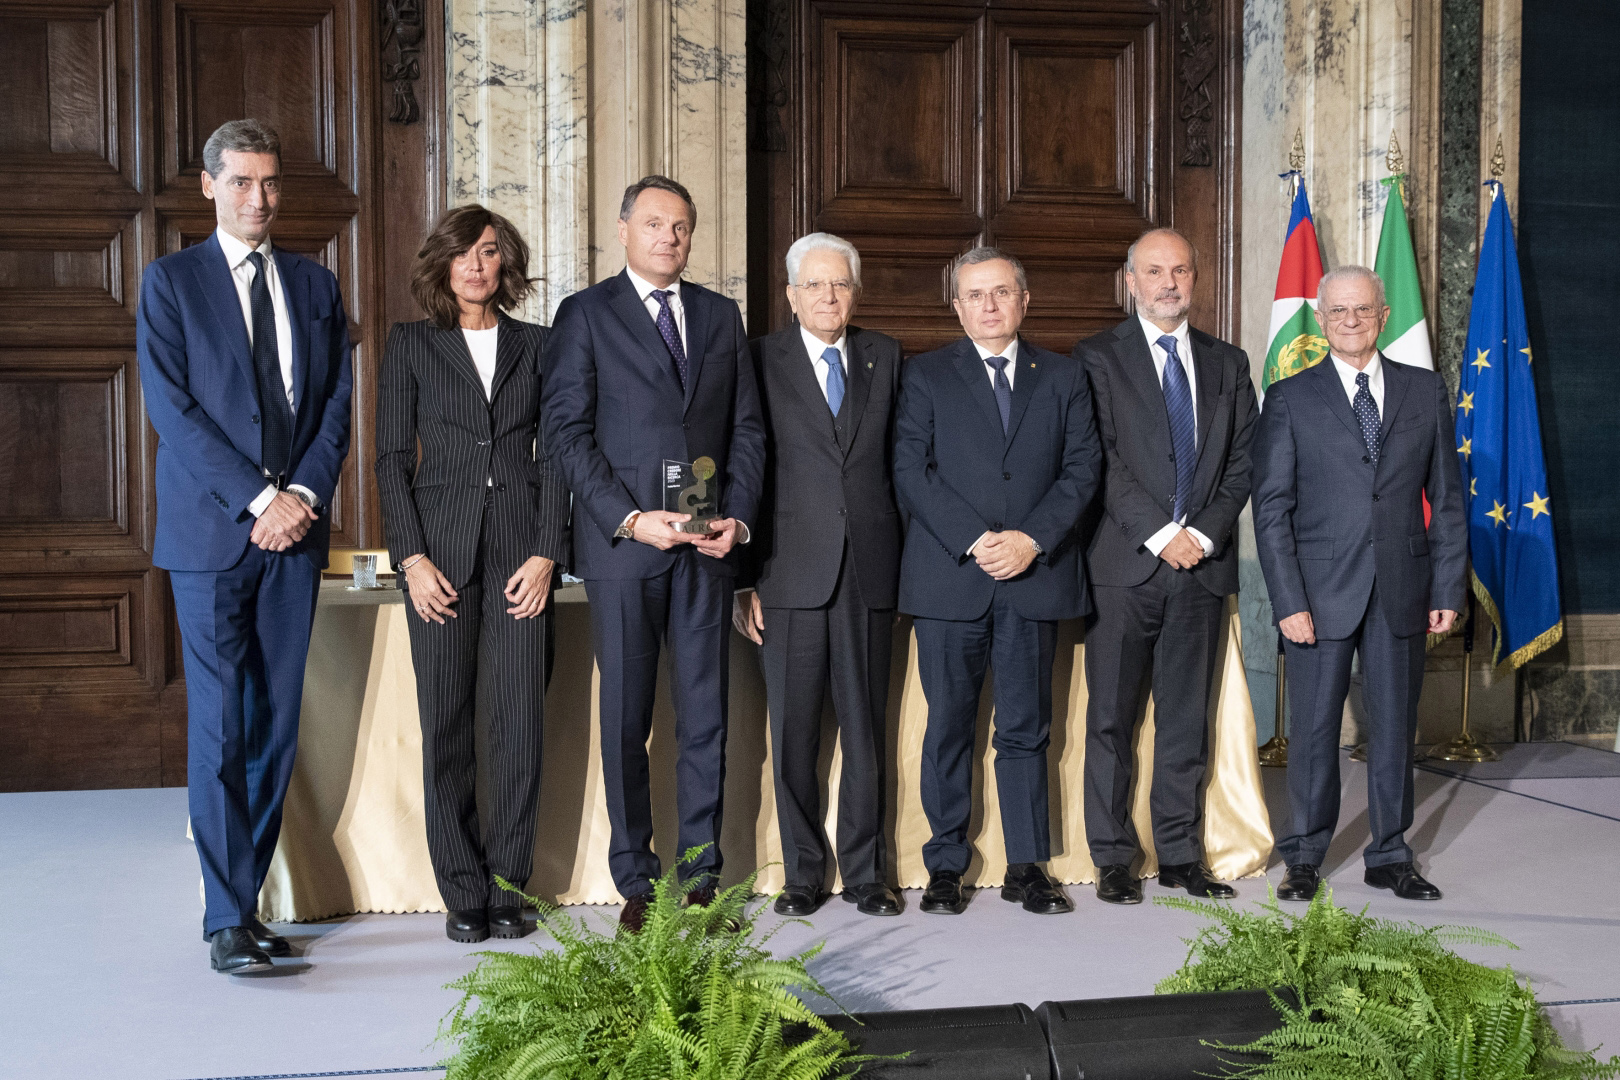 Ricerca sul cancro: il presidente Sergio Mattarella consegna a Roberto Tobia il premio “Airc credere nella ricerca”